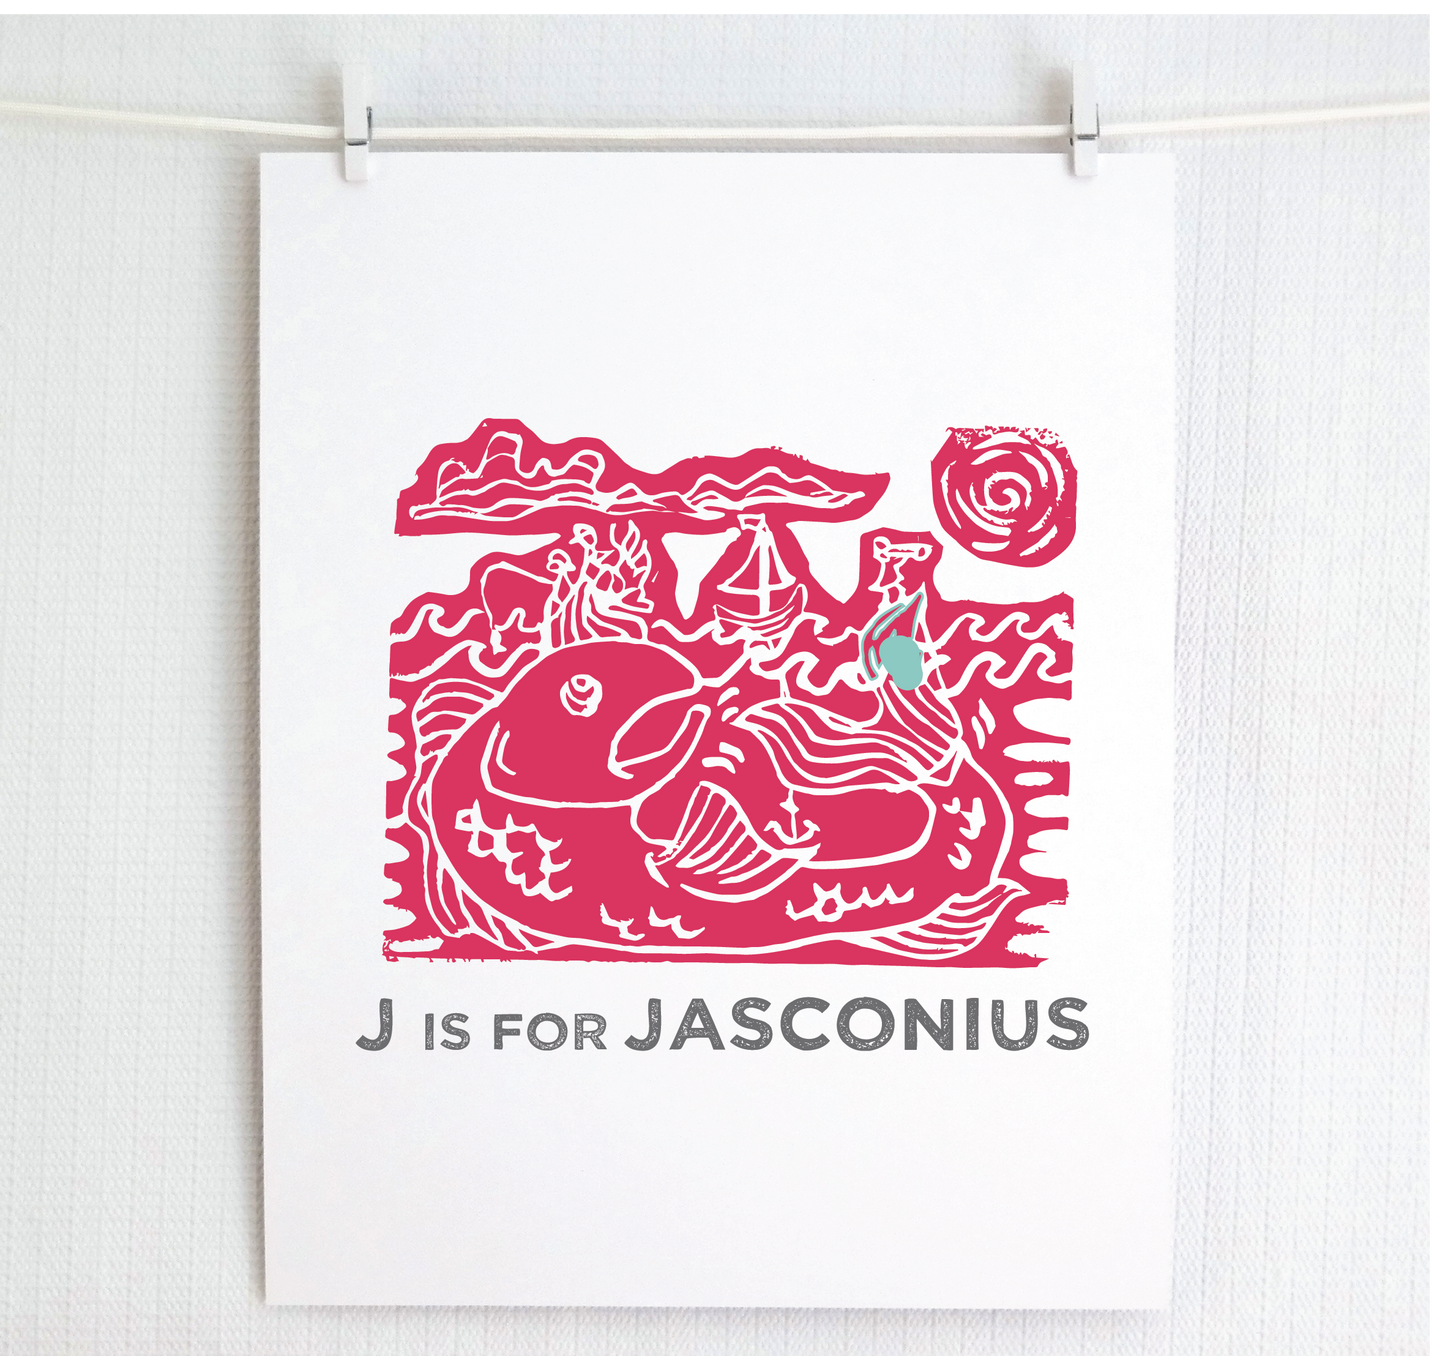 J is for Jasconius